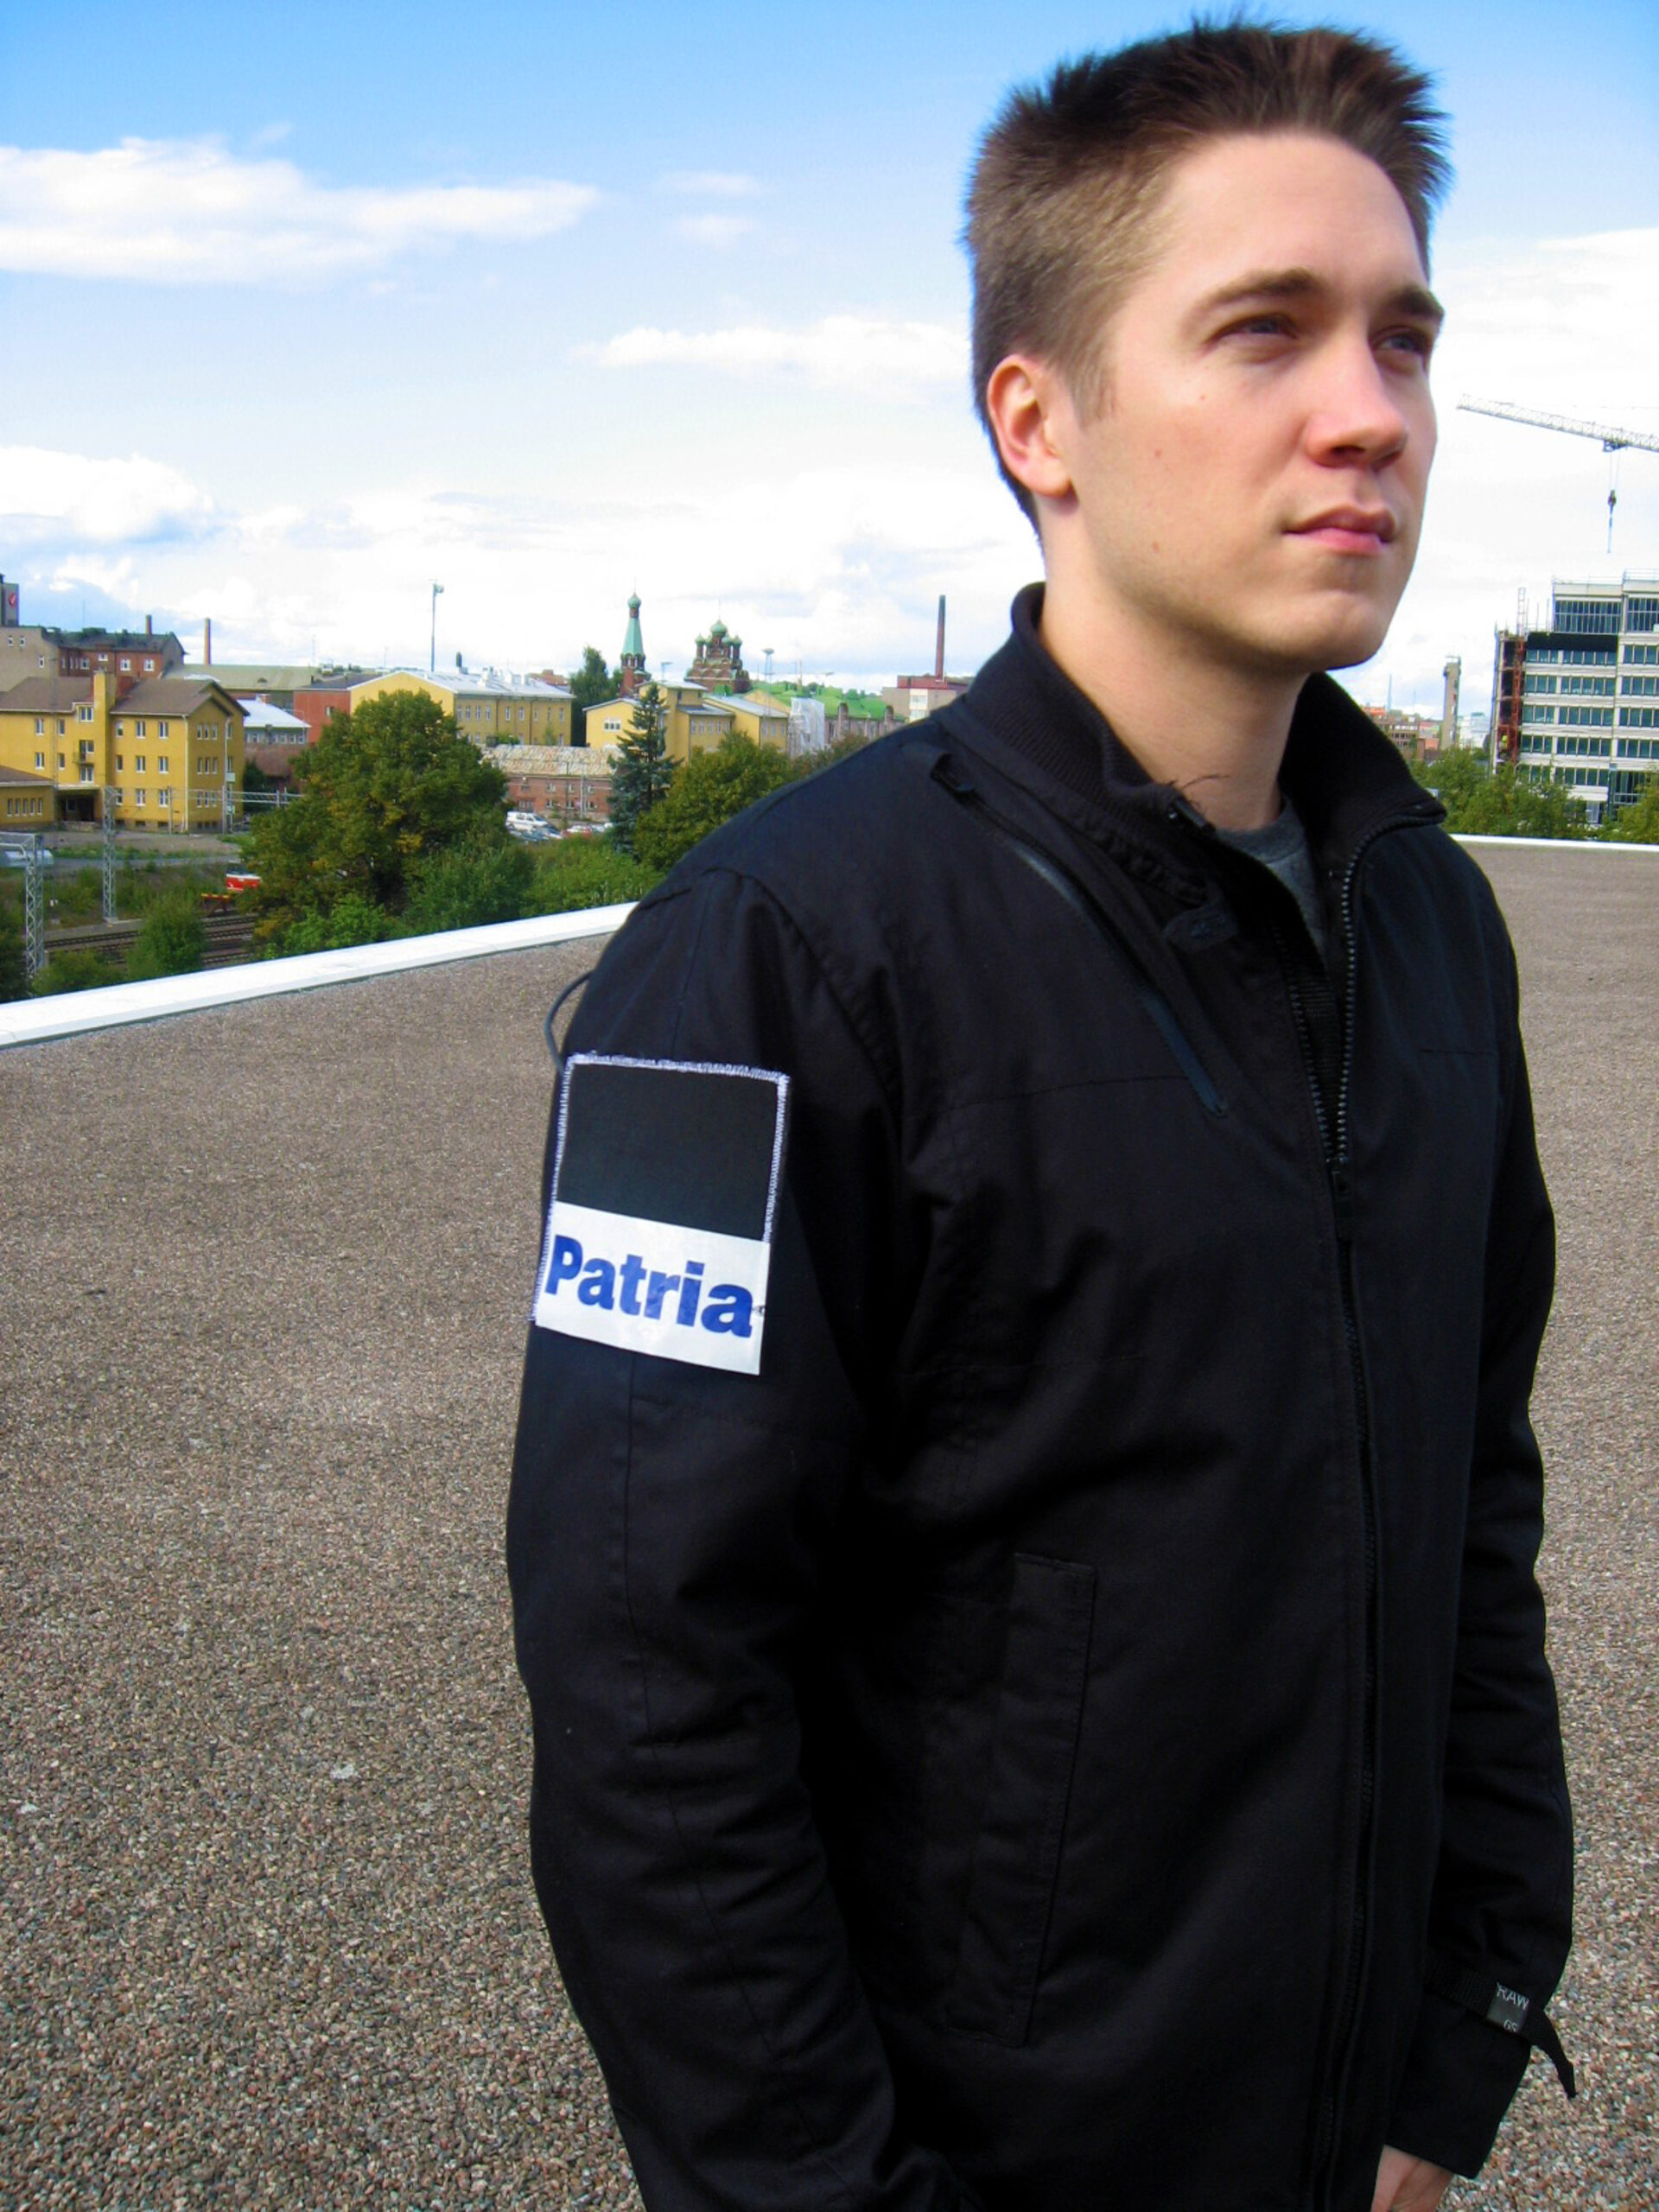 Det finska föetaget Patria har tagit fram en antenn av tyg